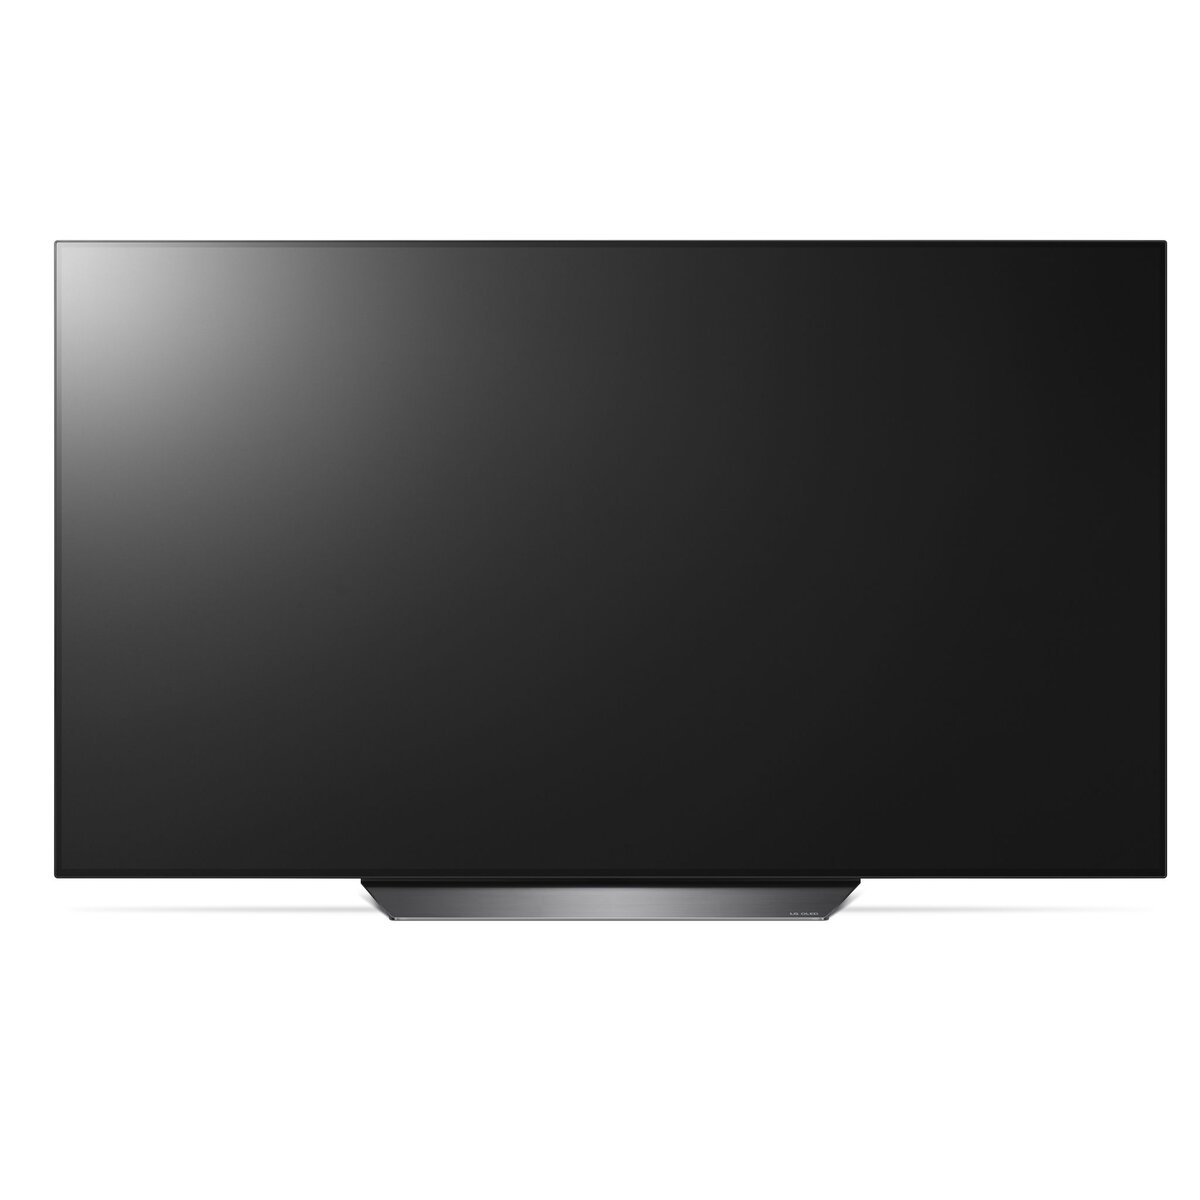 LG OLED65B8 TV OLED 4K UHD 164 cm HDR Smart TV